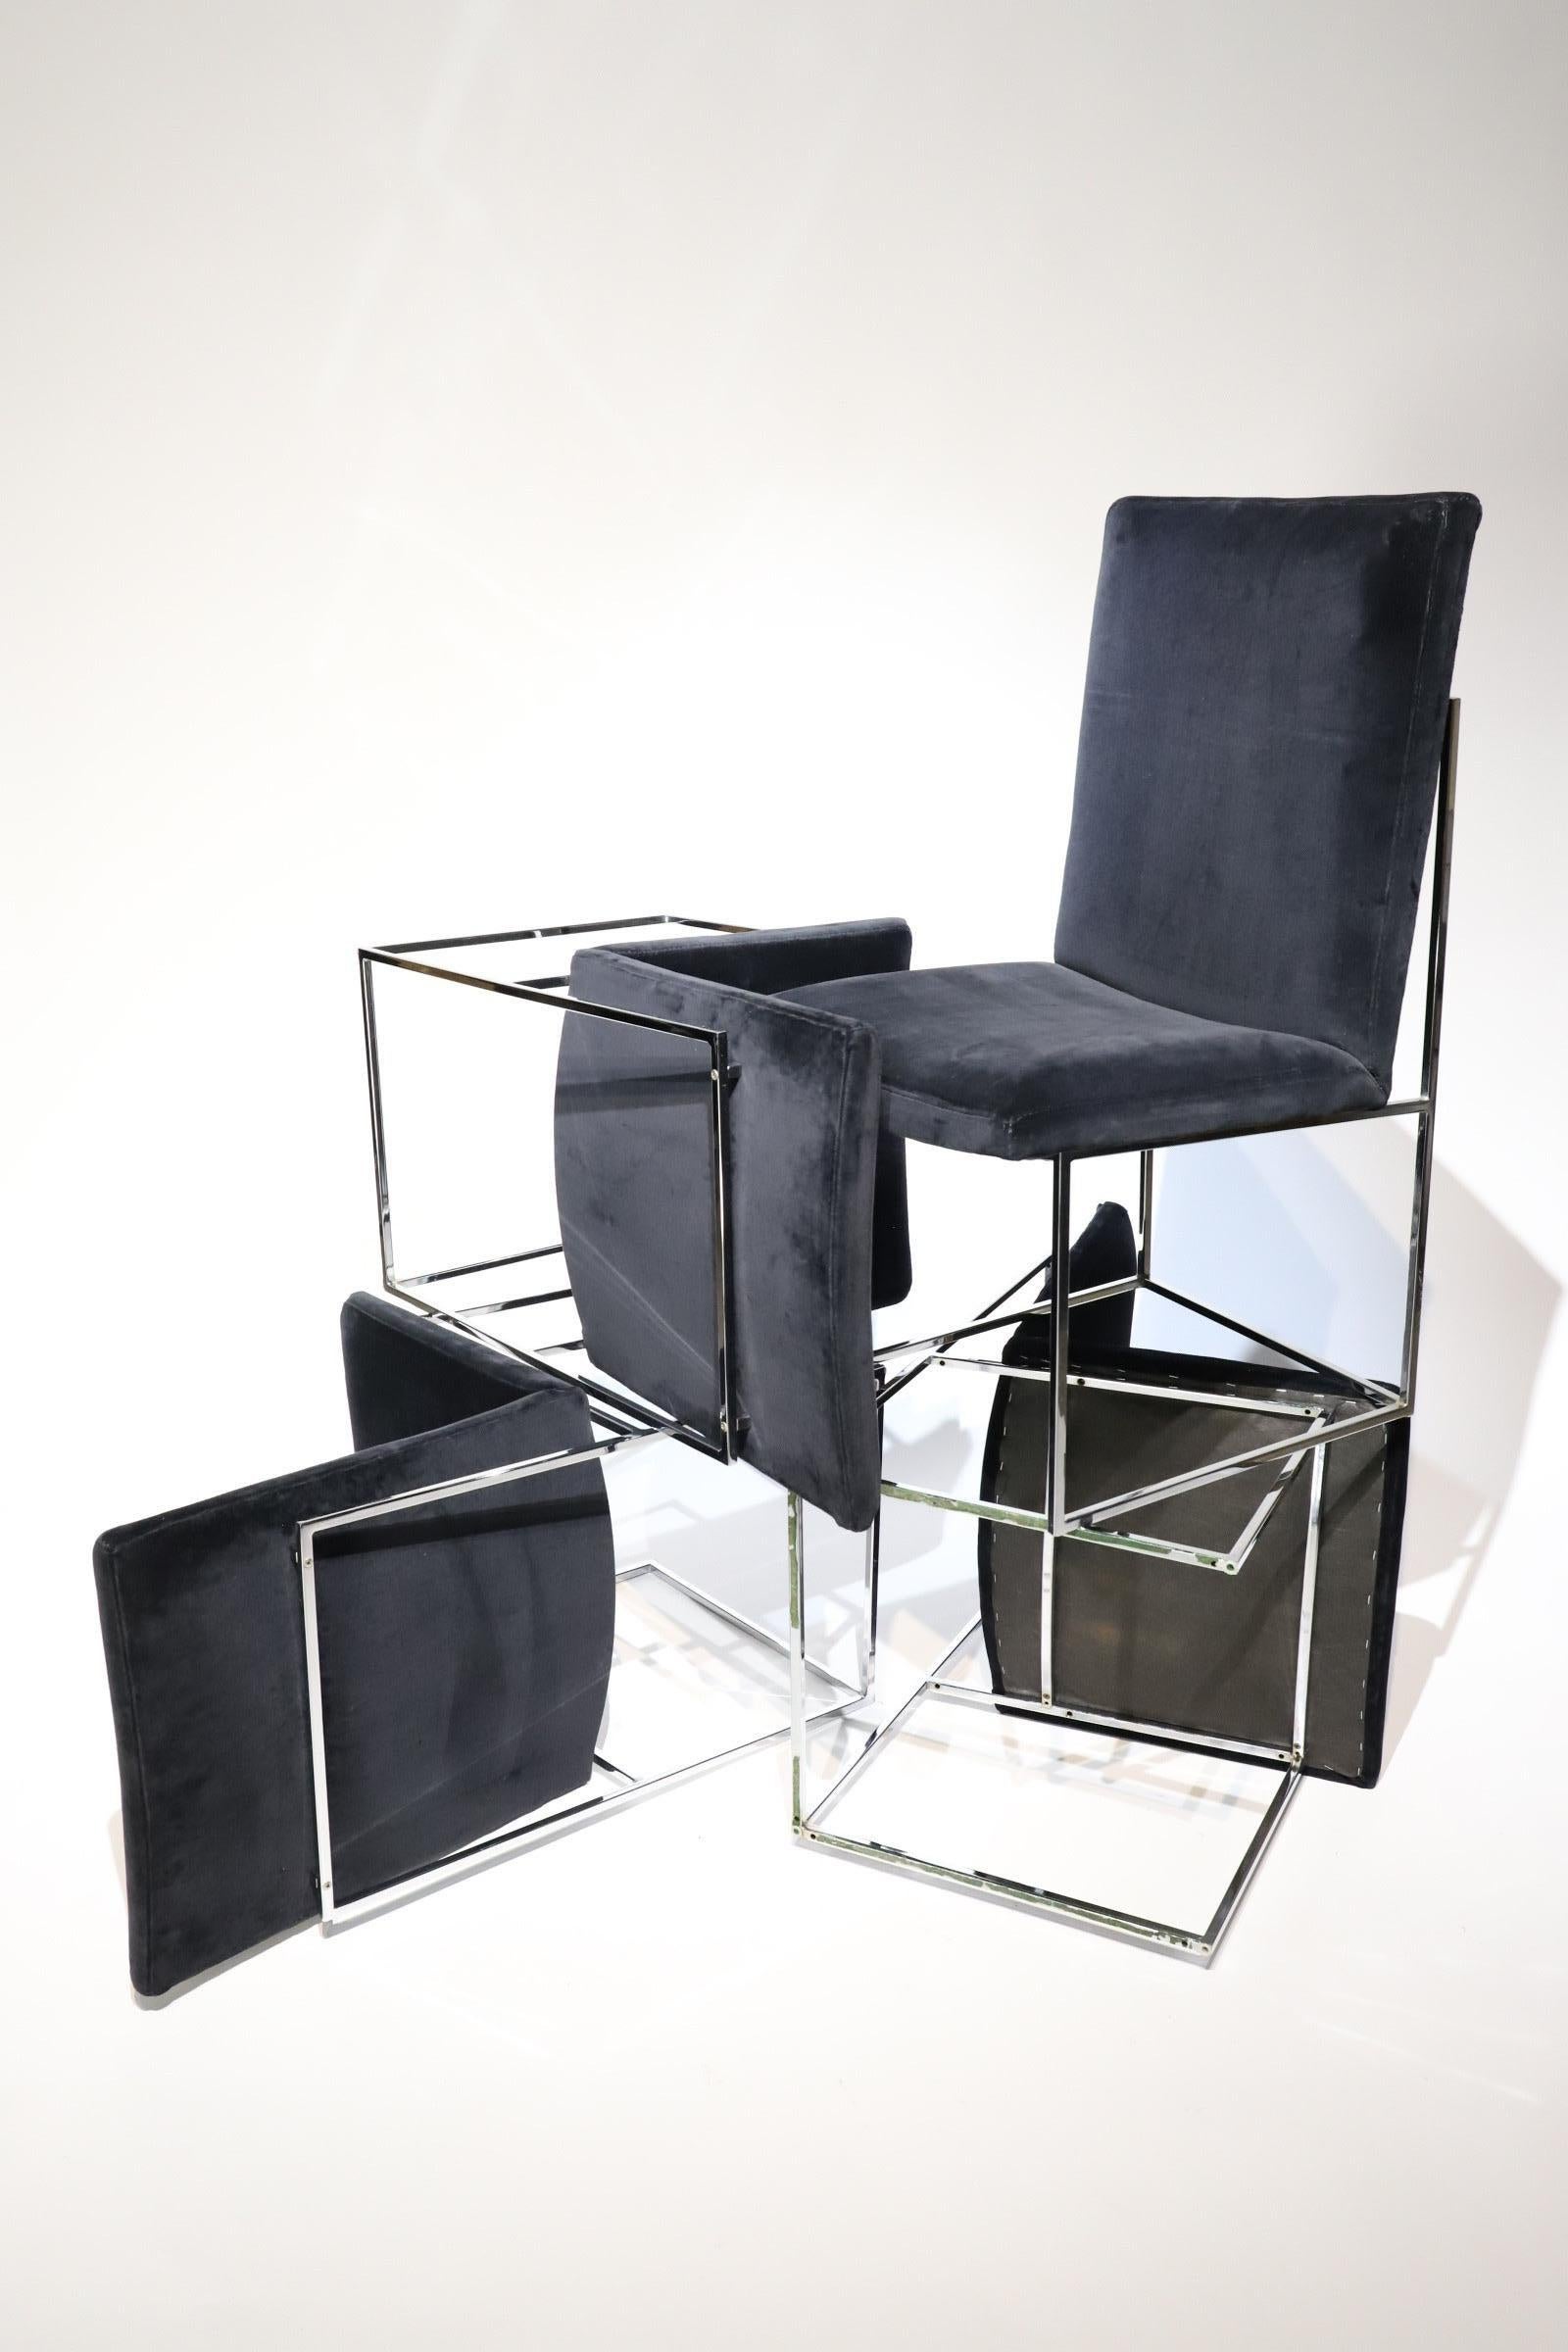 Absolut atemberaubender Satz von sechs quadratischen Chromrohr-Esszimmerstühlen von Milo Baughman für Thayer Coggin. Das Set besteht aus vier Beistellstühlen mit hoher Rückenlehne und zwei niedrigen Sesseln. Die Stühle waren ursprünglich mit einem